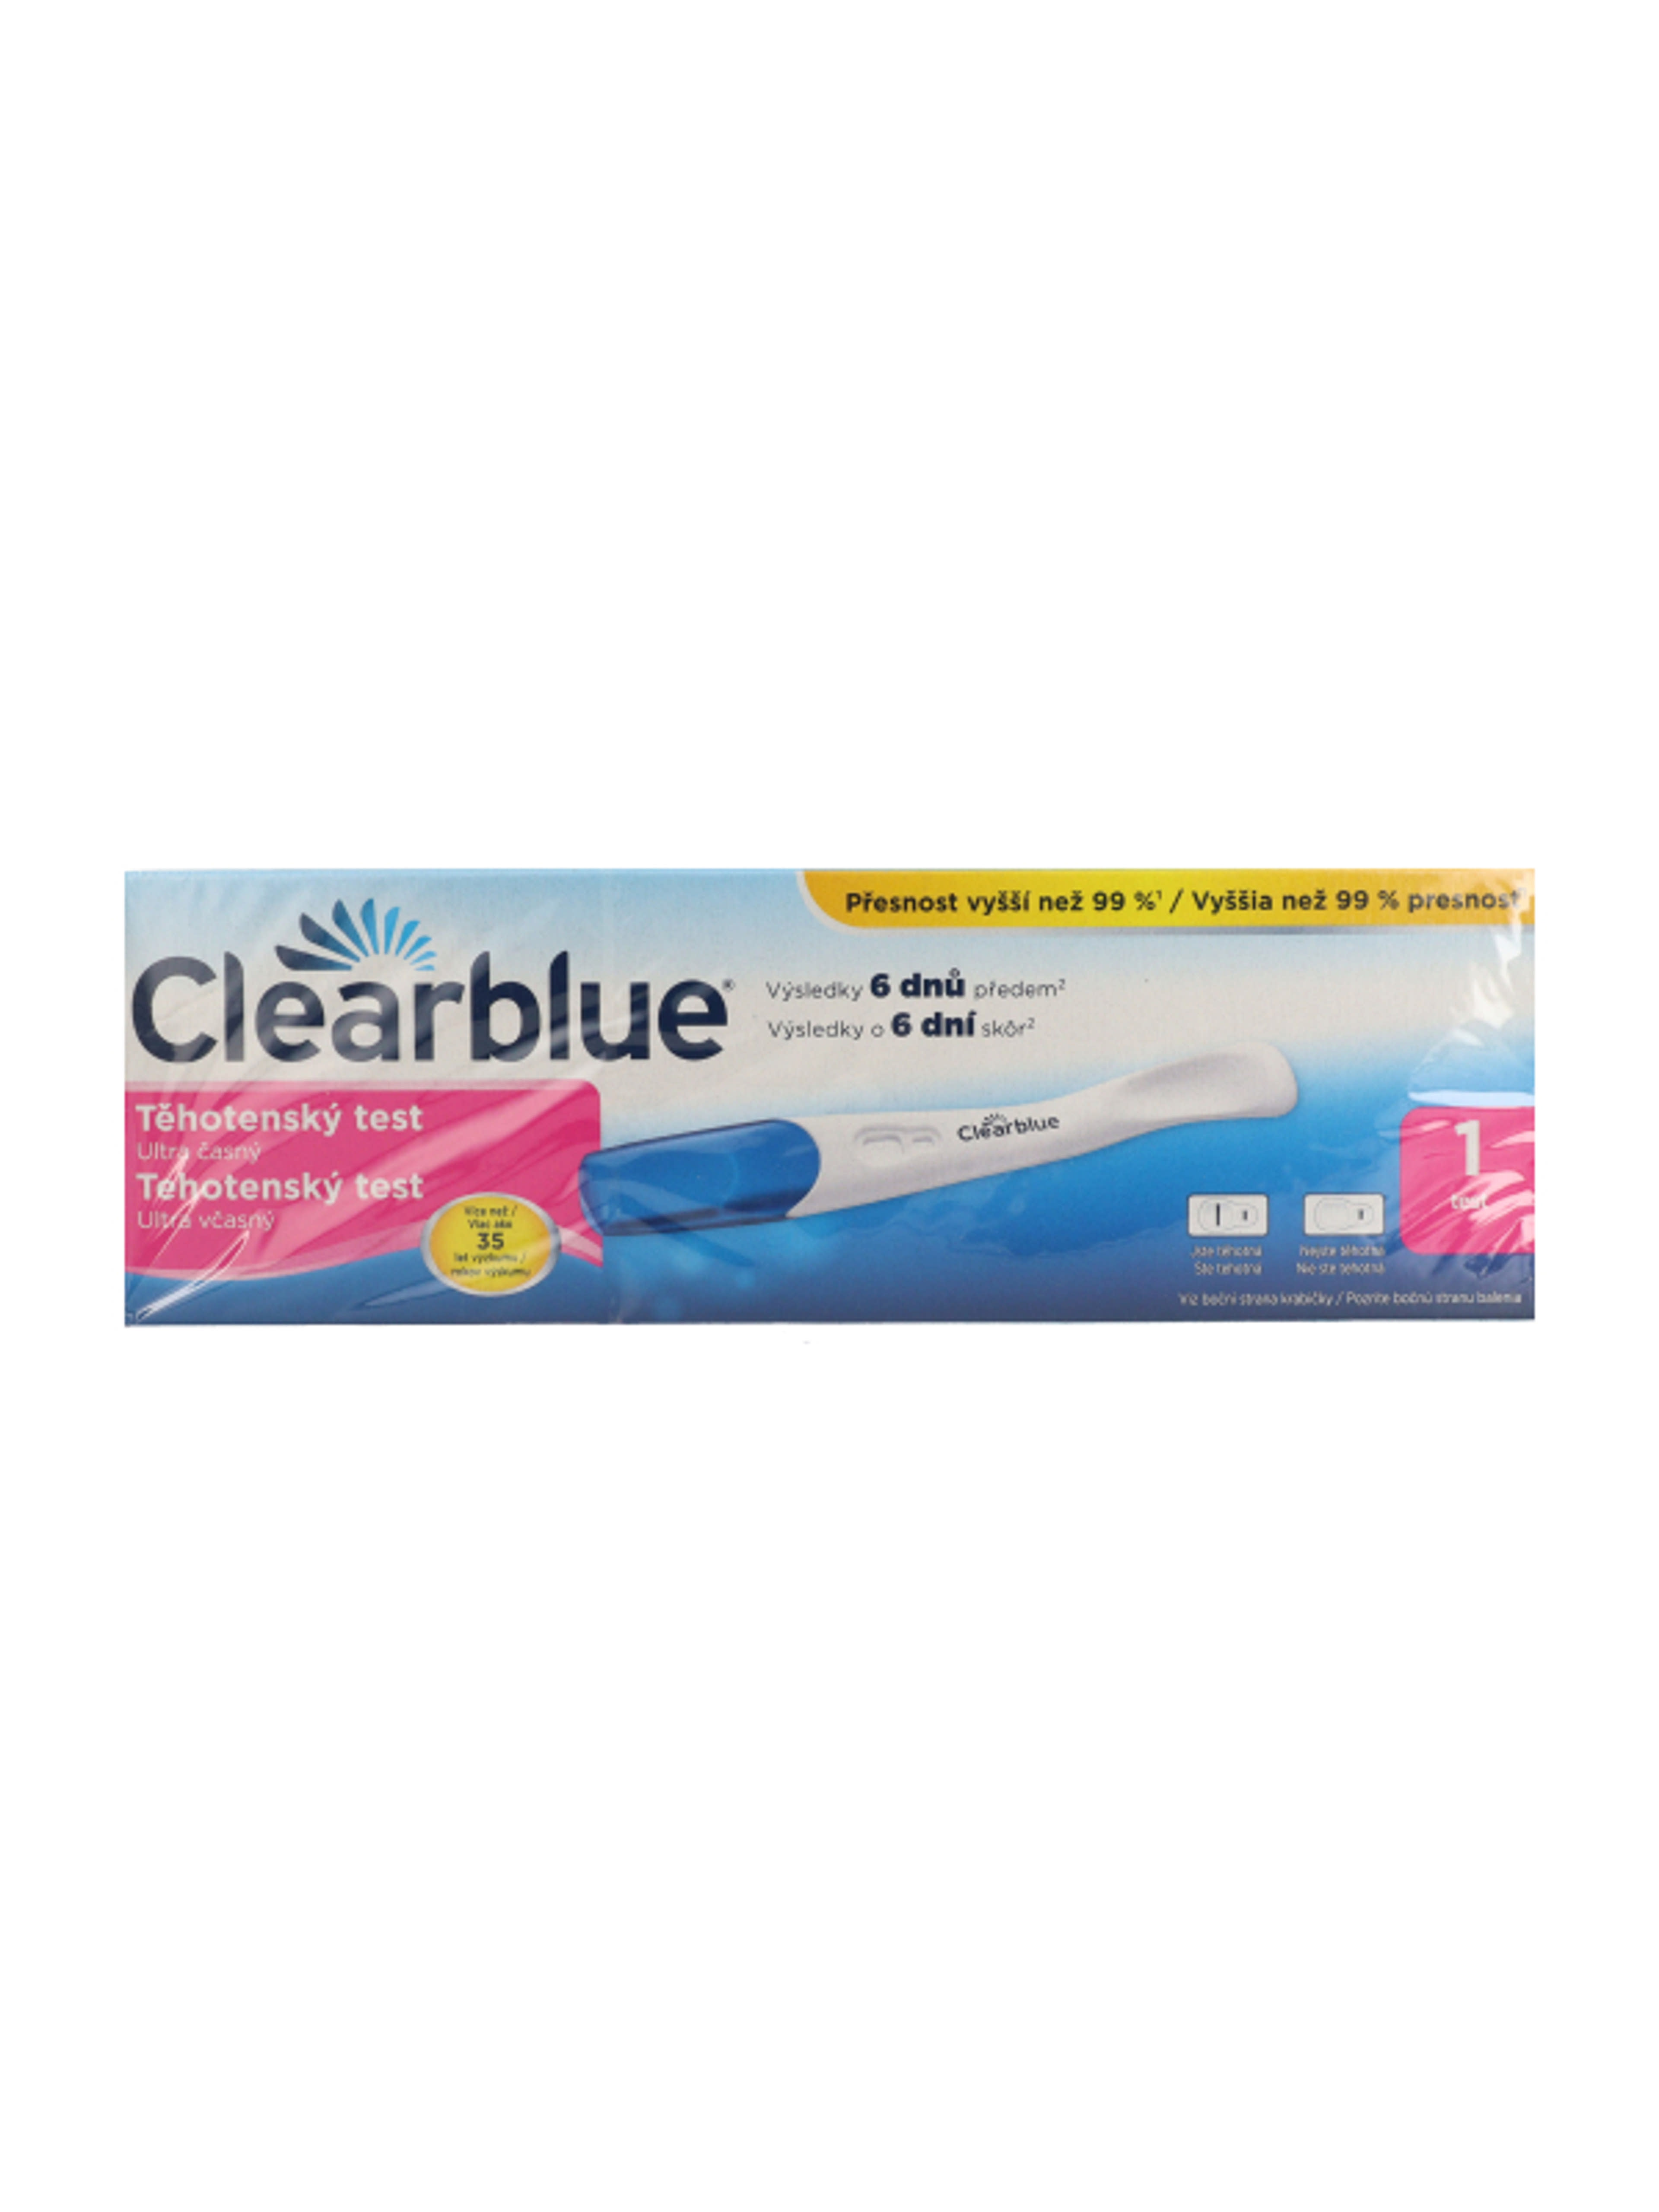 Clearblue rendkívül korai terhességi teszt - 1 db-2